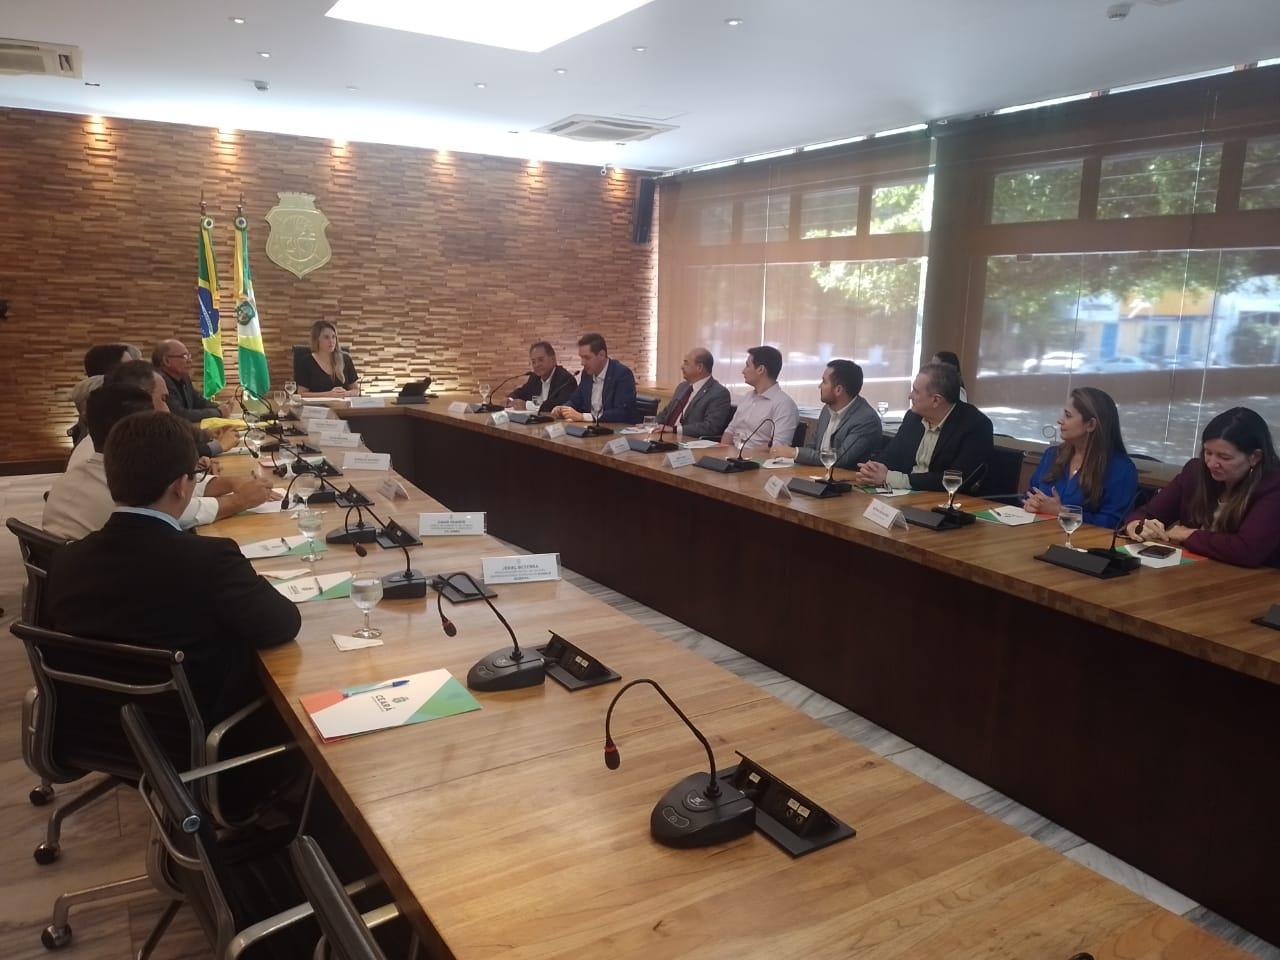 Assinatura de acordo da transferência de gestão de aeroportos regionais do Ceará à Infraero no Palácio da Abolição